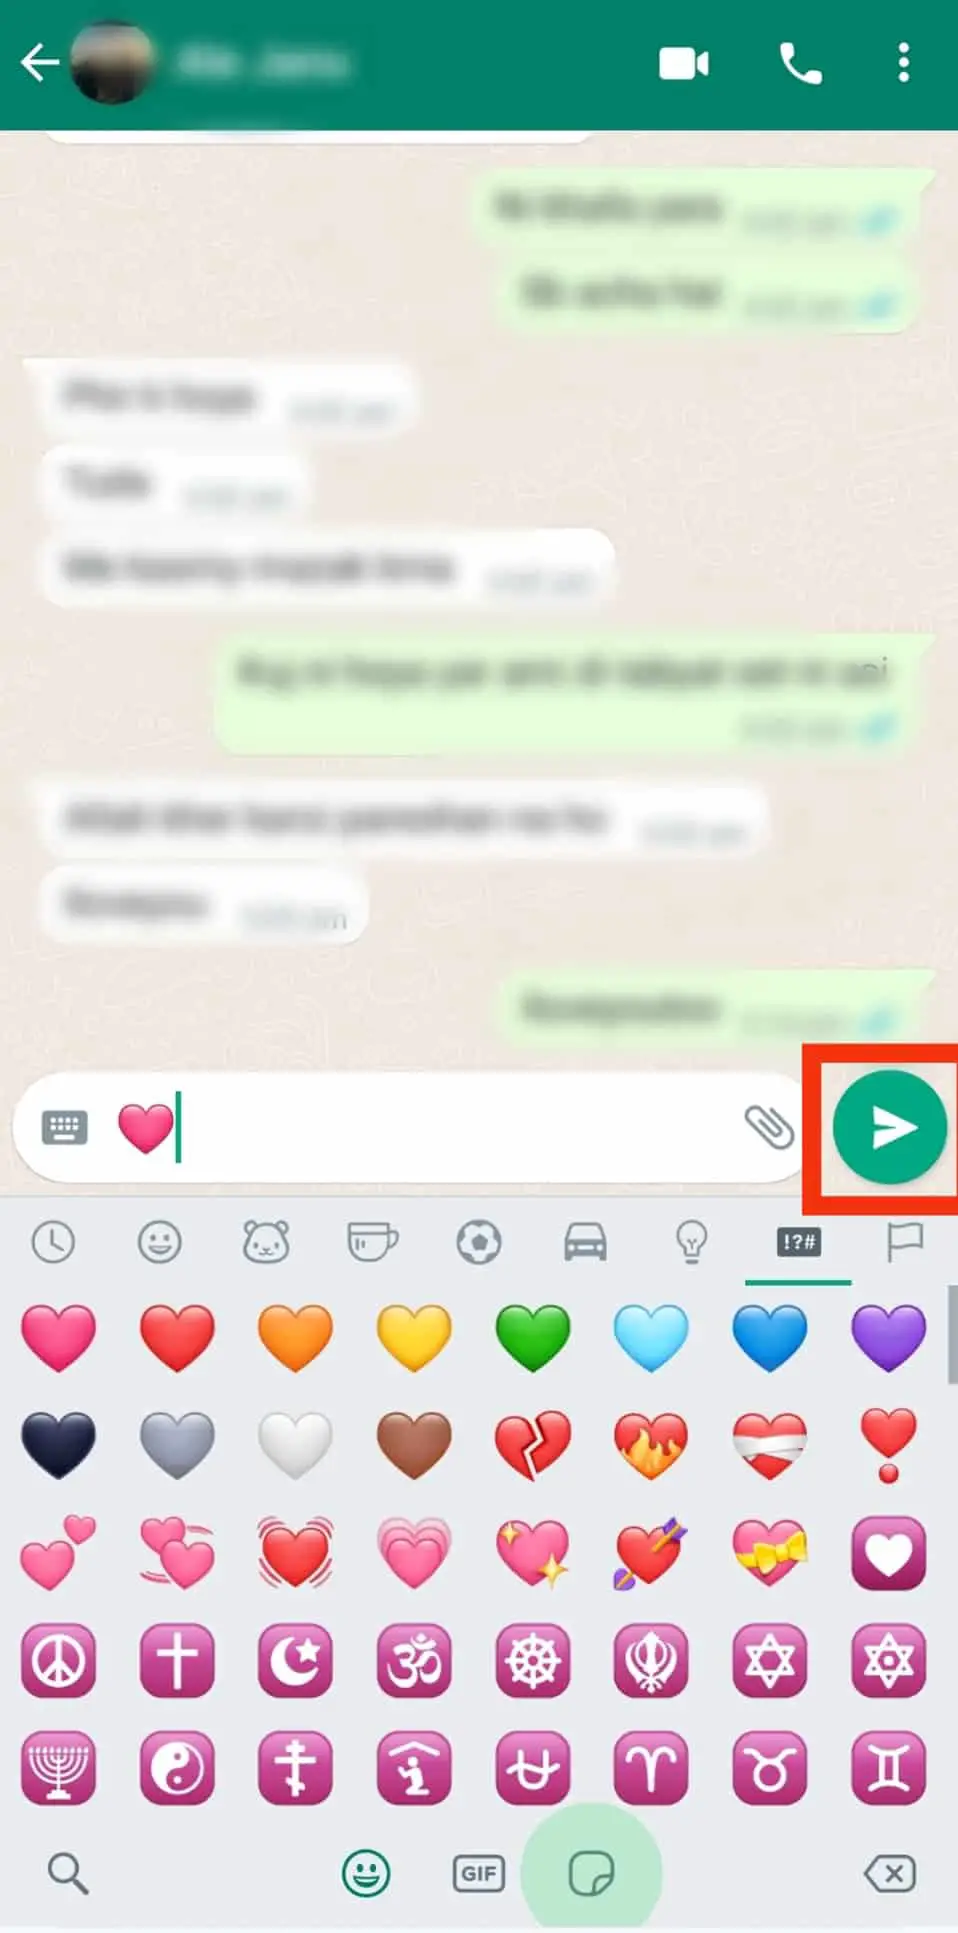 Cómo enviar corazón en WhatsApp?